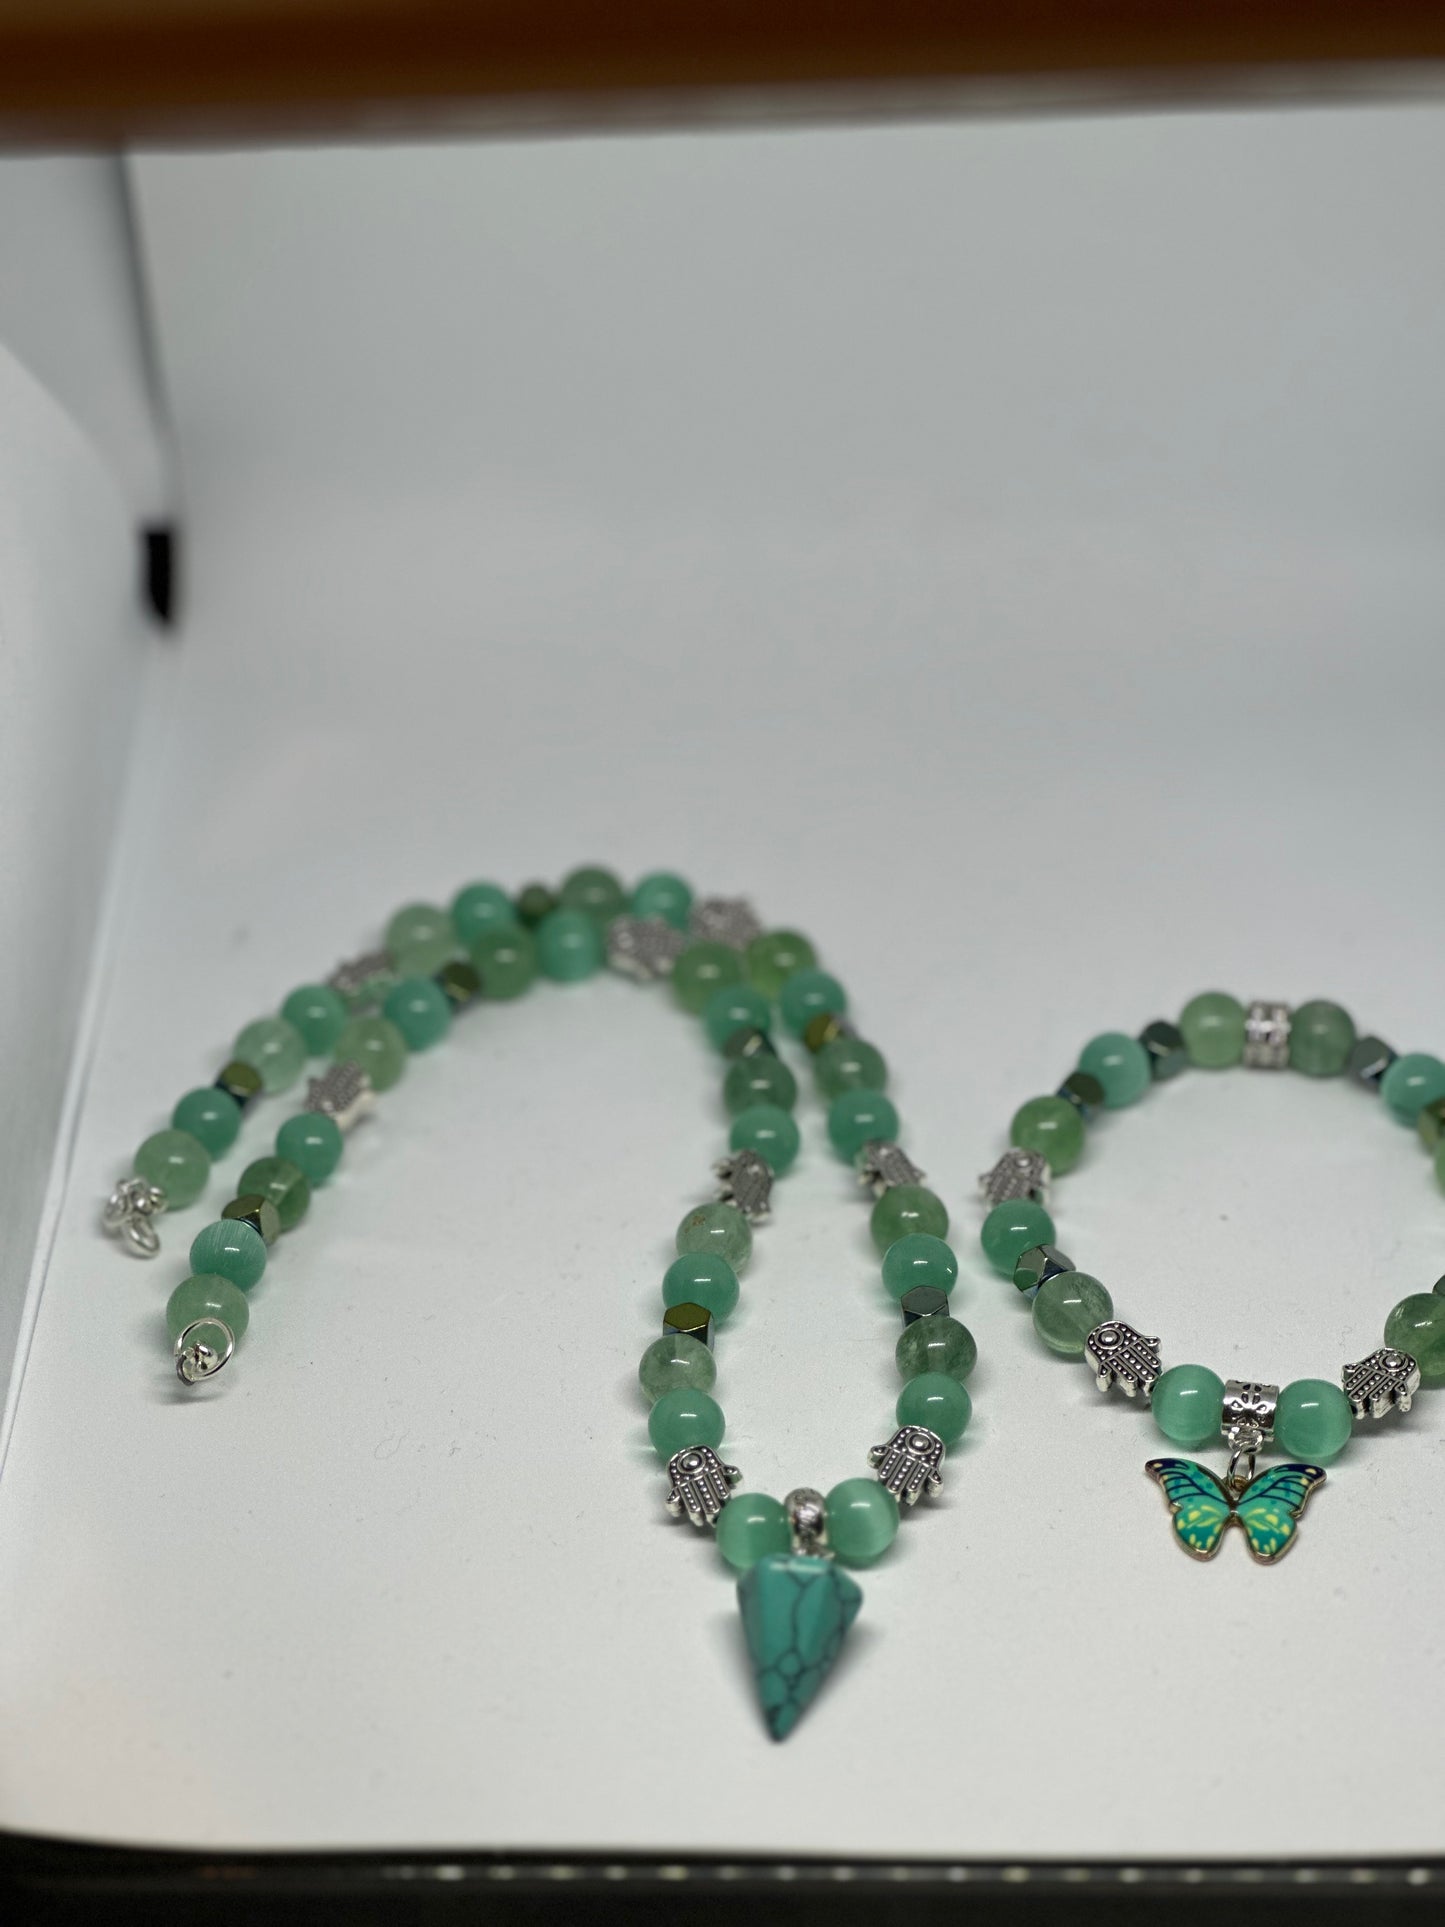 Necklace and bracelet set